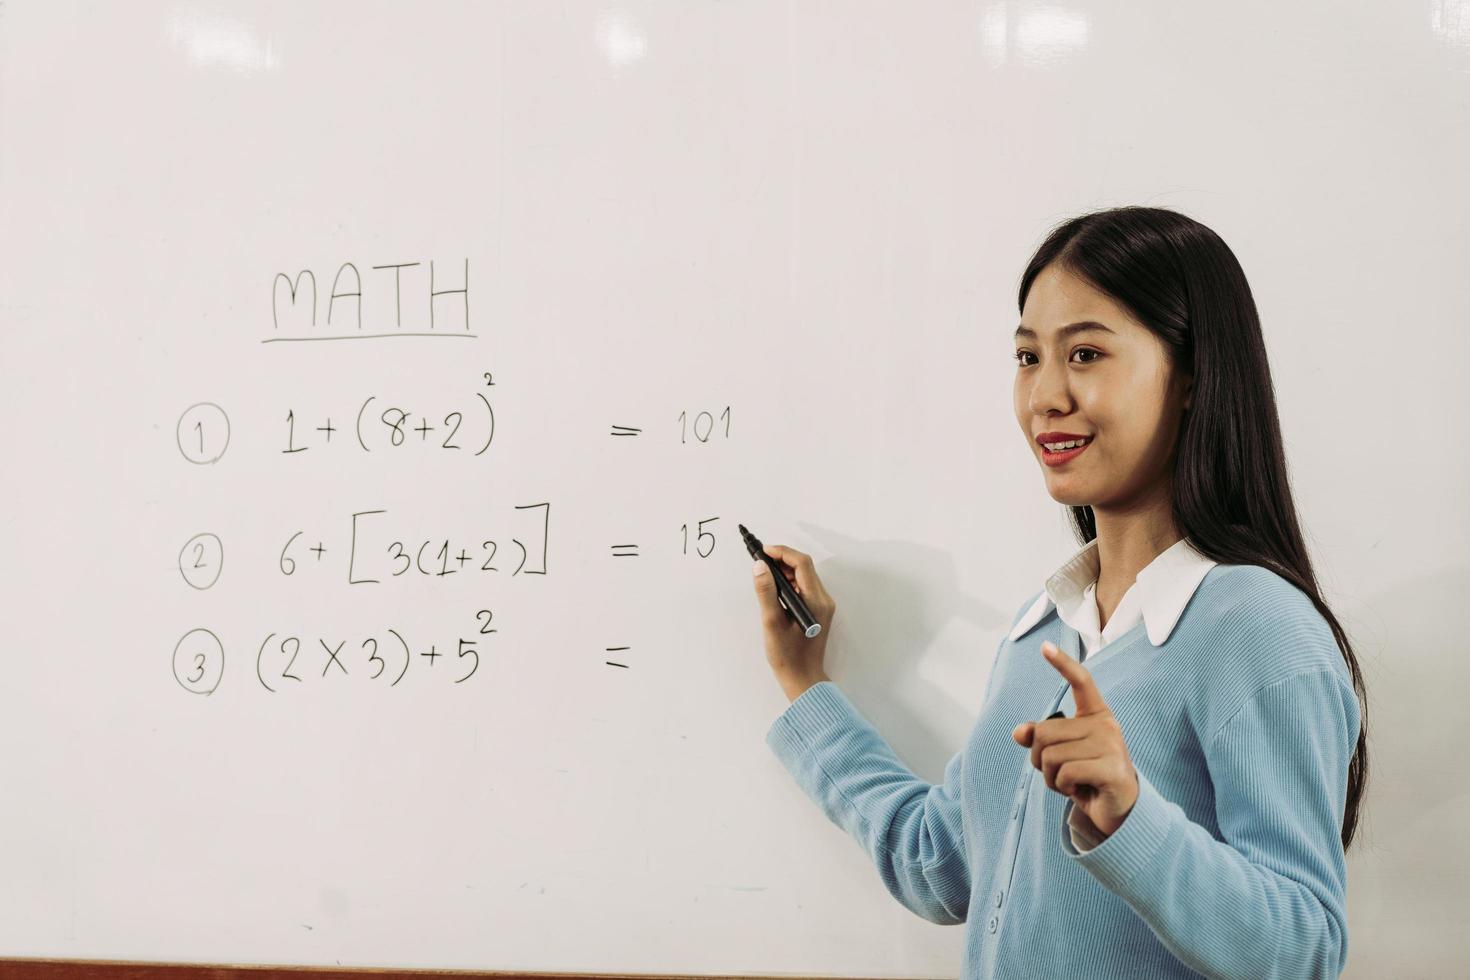 una profesora asiática está enseñando a los estudiantes en el aula mientras señala números en la pizarra blanca. foto